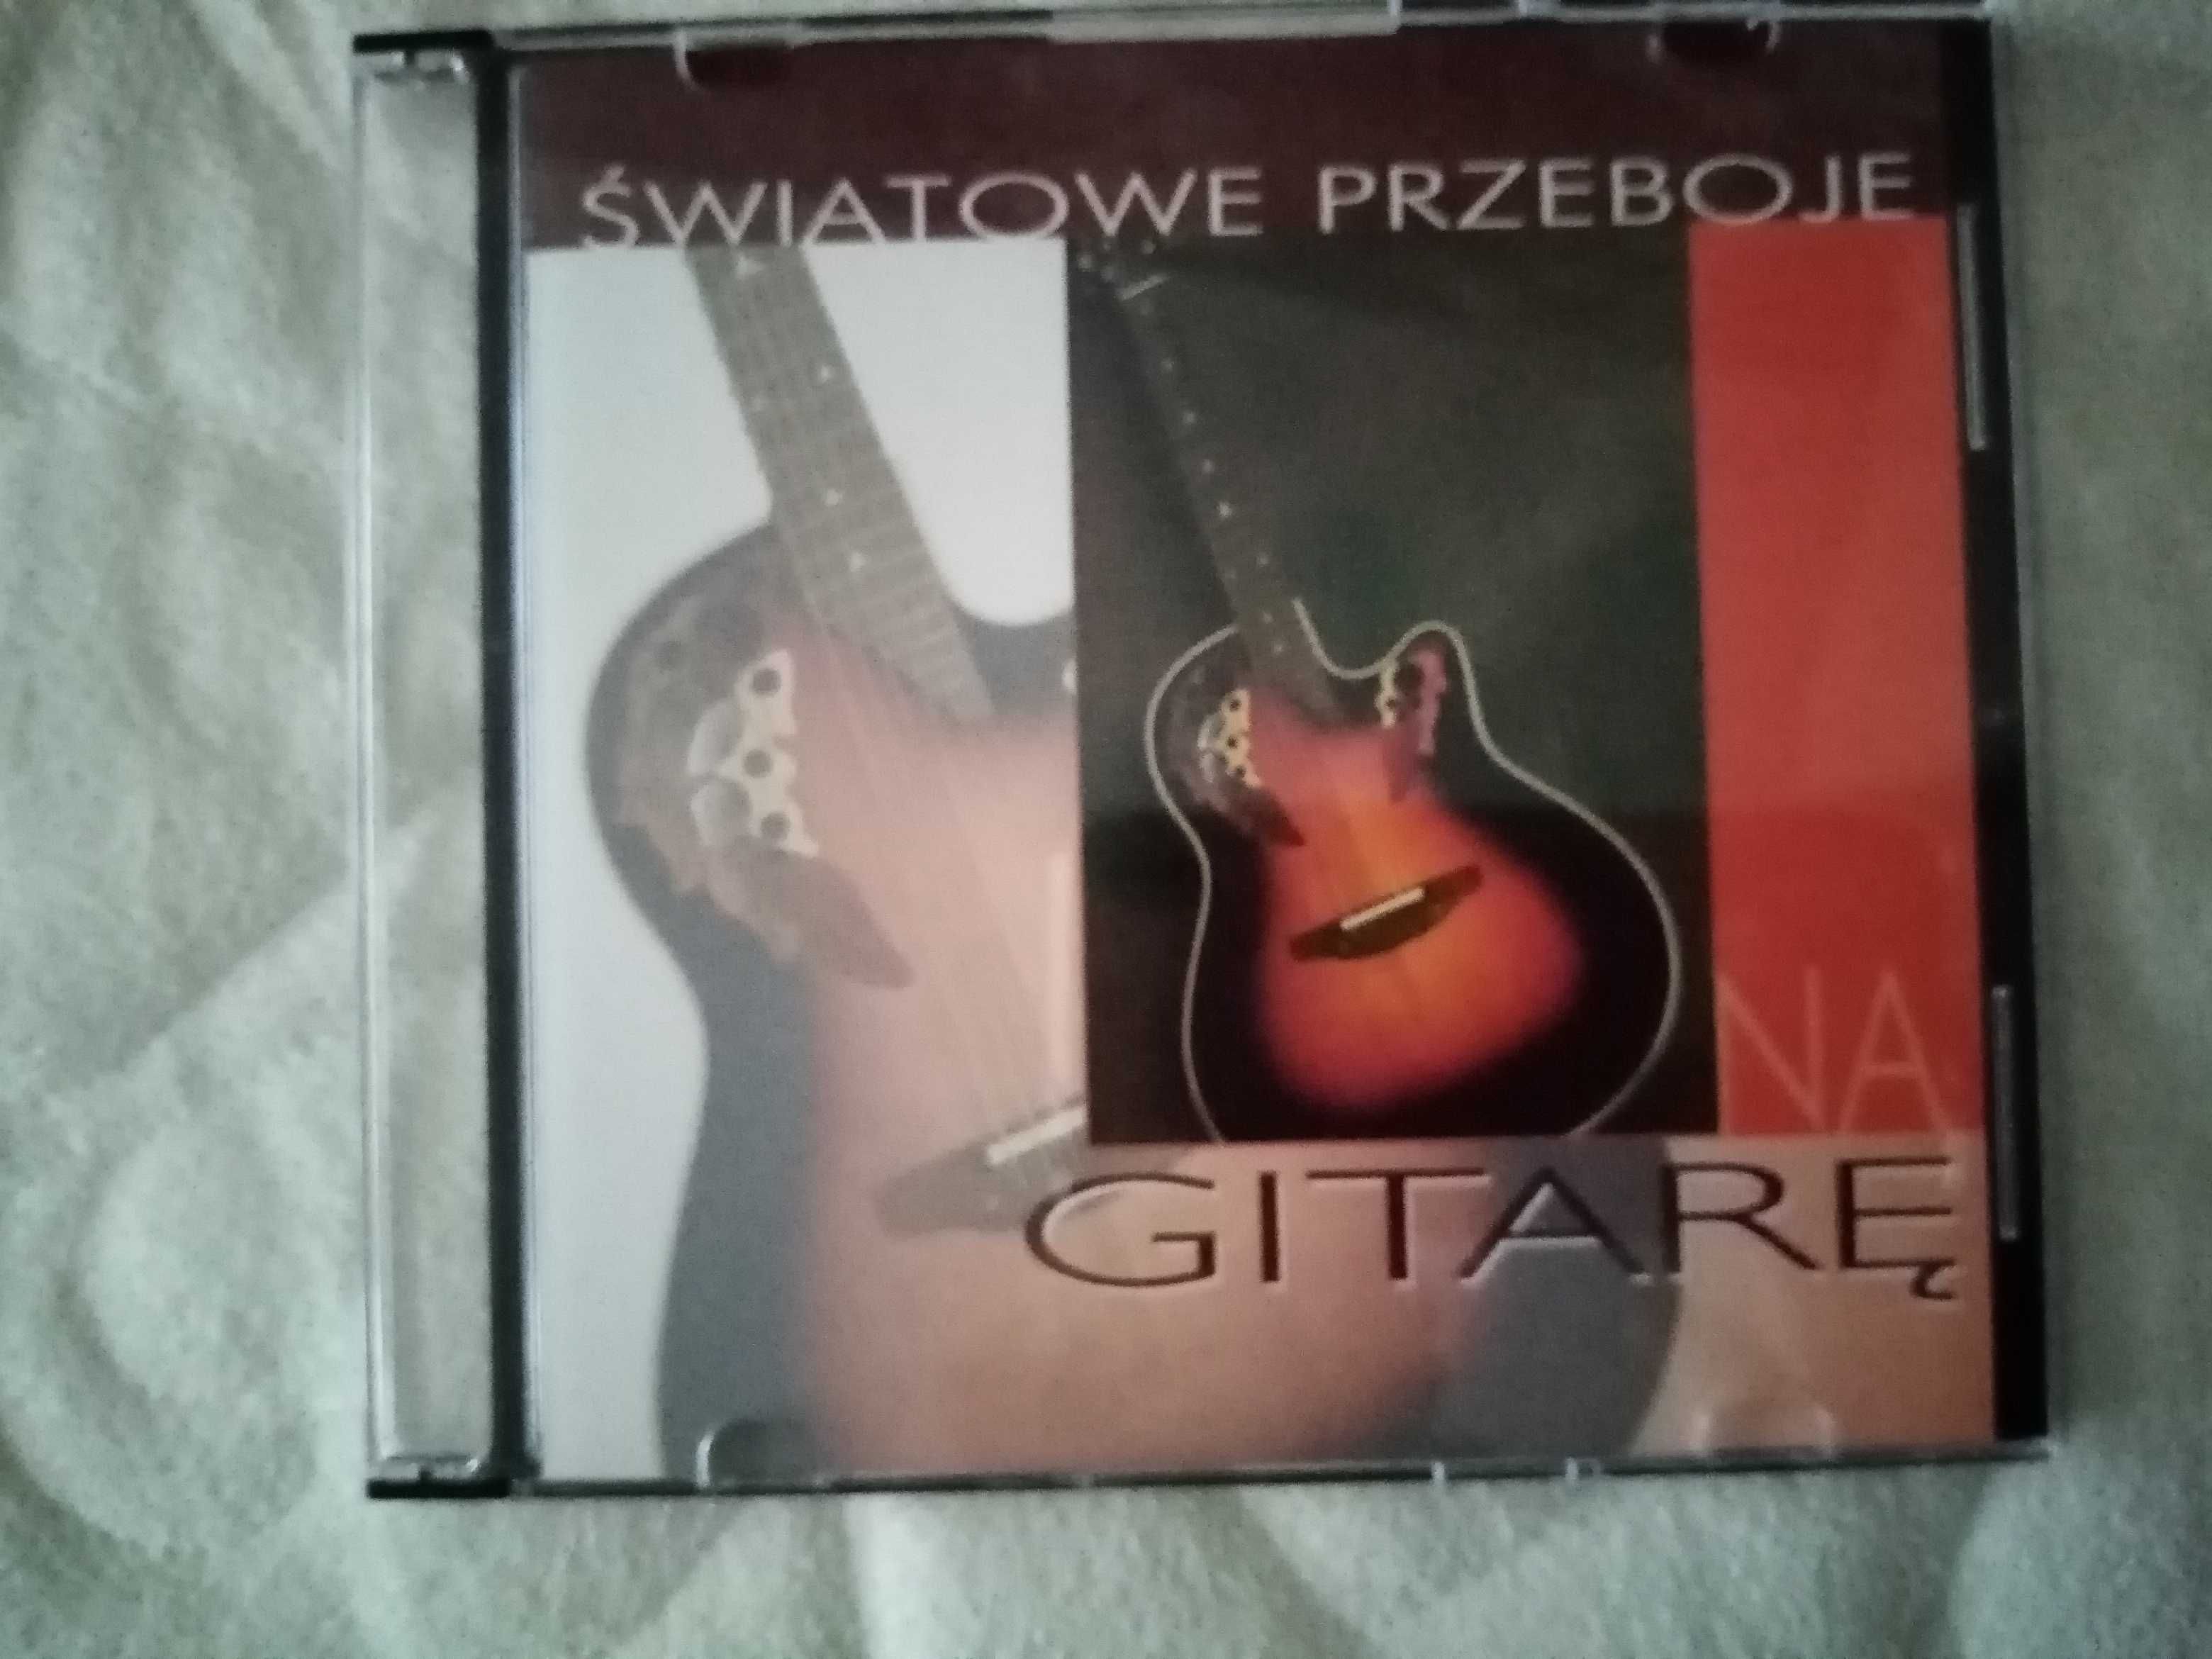 CD - Światowe przeboje na gitarę, 2001. TANIEJ!